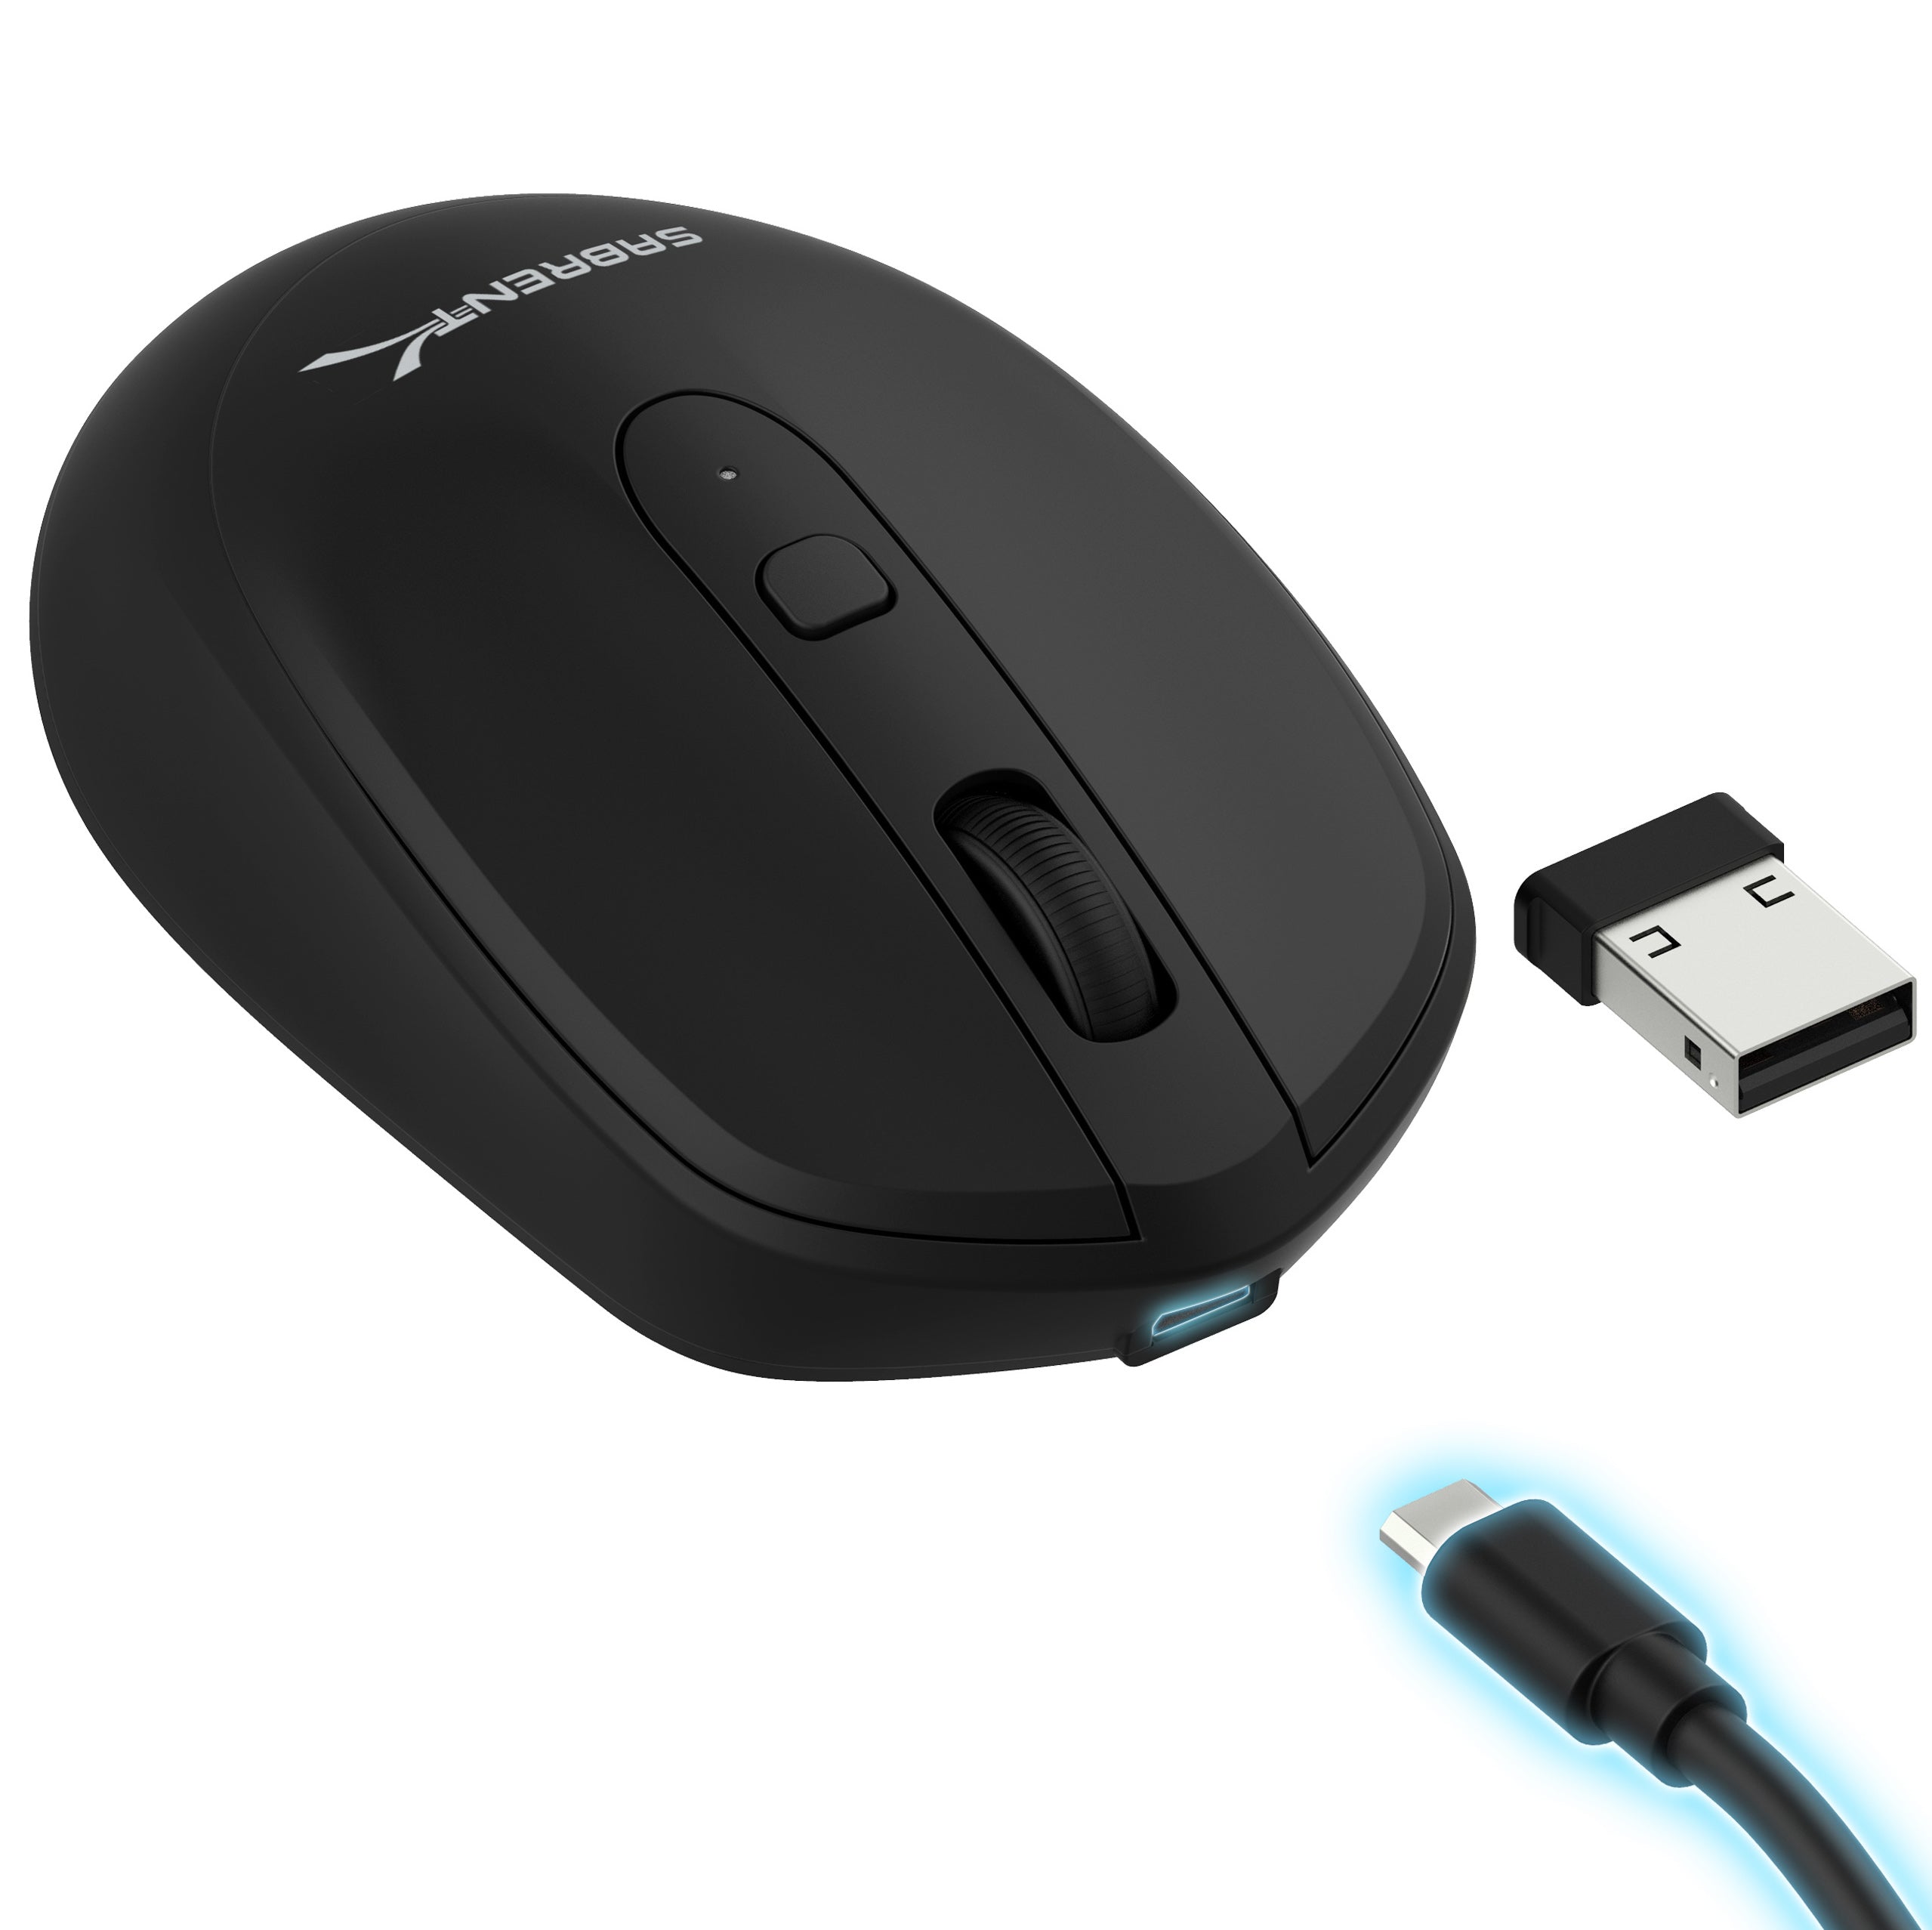 Драйвера на мышь. 2.4 GHZ Wireless Mouse. 2.4 G Wireless Mouse драйвер. Беспроводная мышь dellww514. Wireless Mouse драйвер.